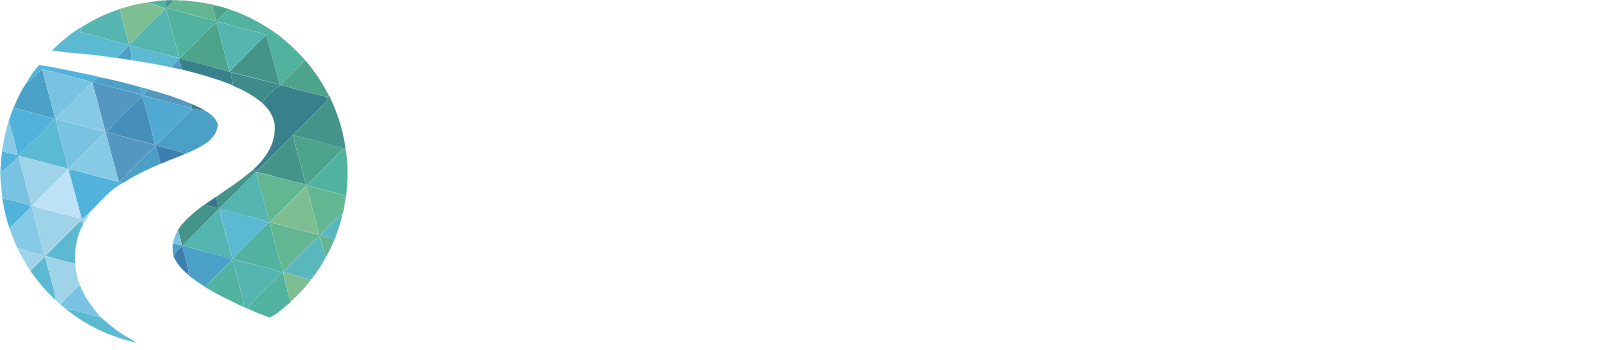 Travere Therapeutics logo grand pour les fonds sombres (PNG transparent)